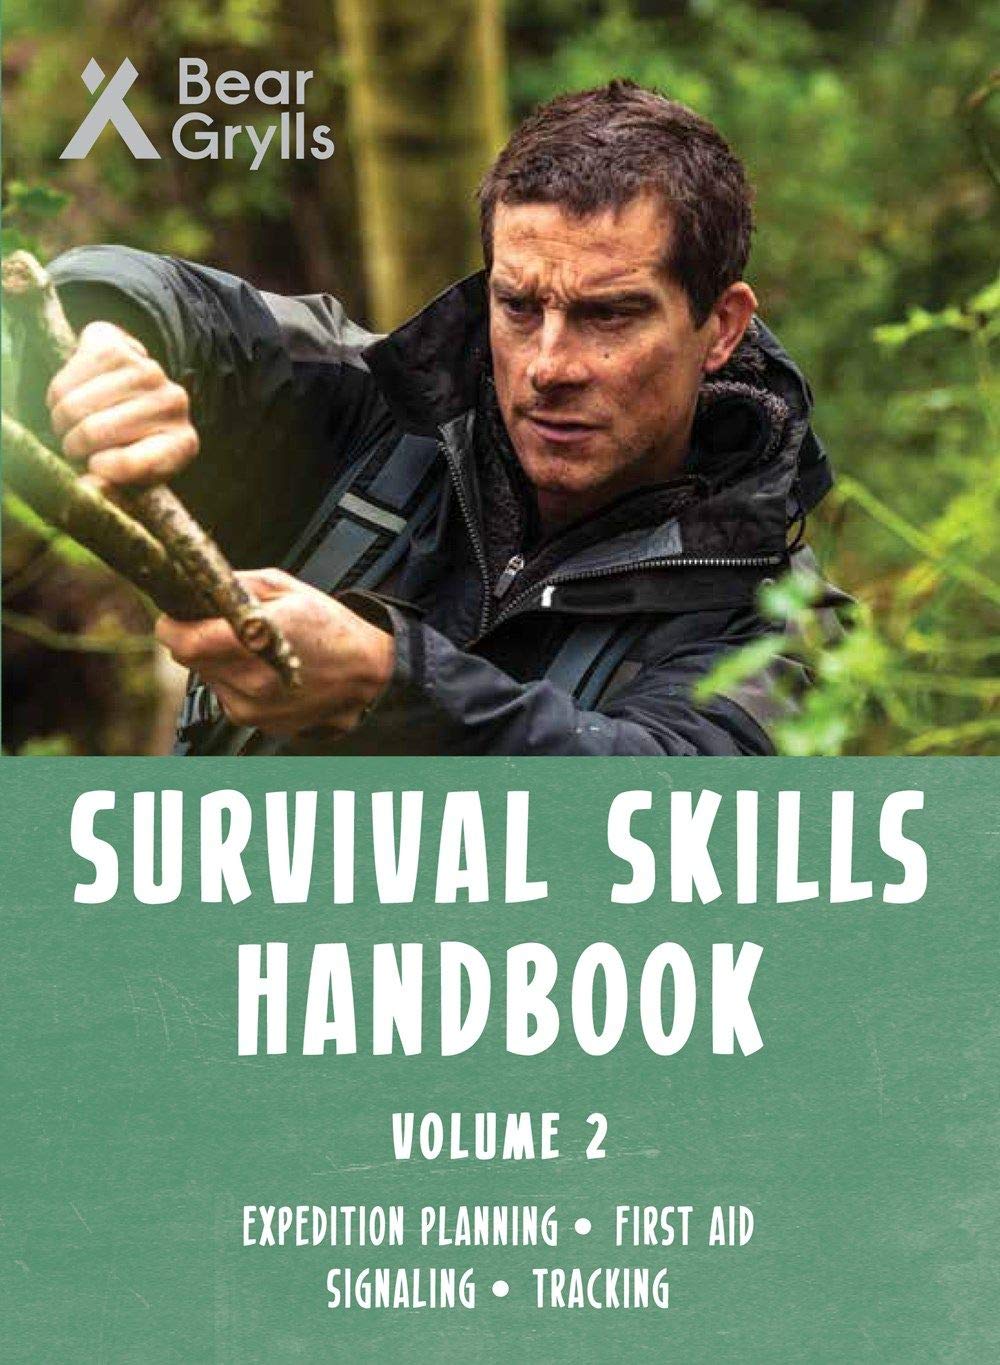 Bear Grylls Survival Skills Handbook Vol 2